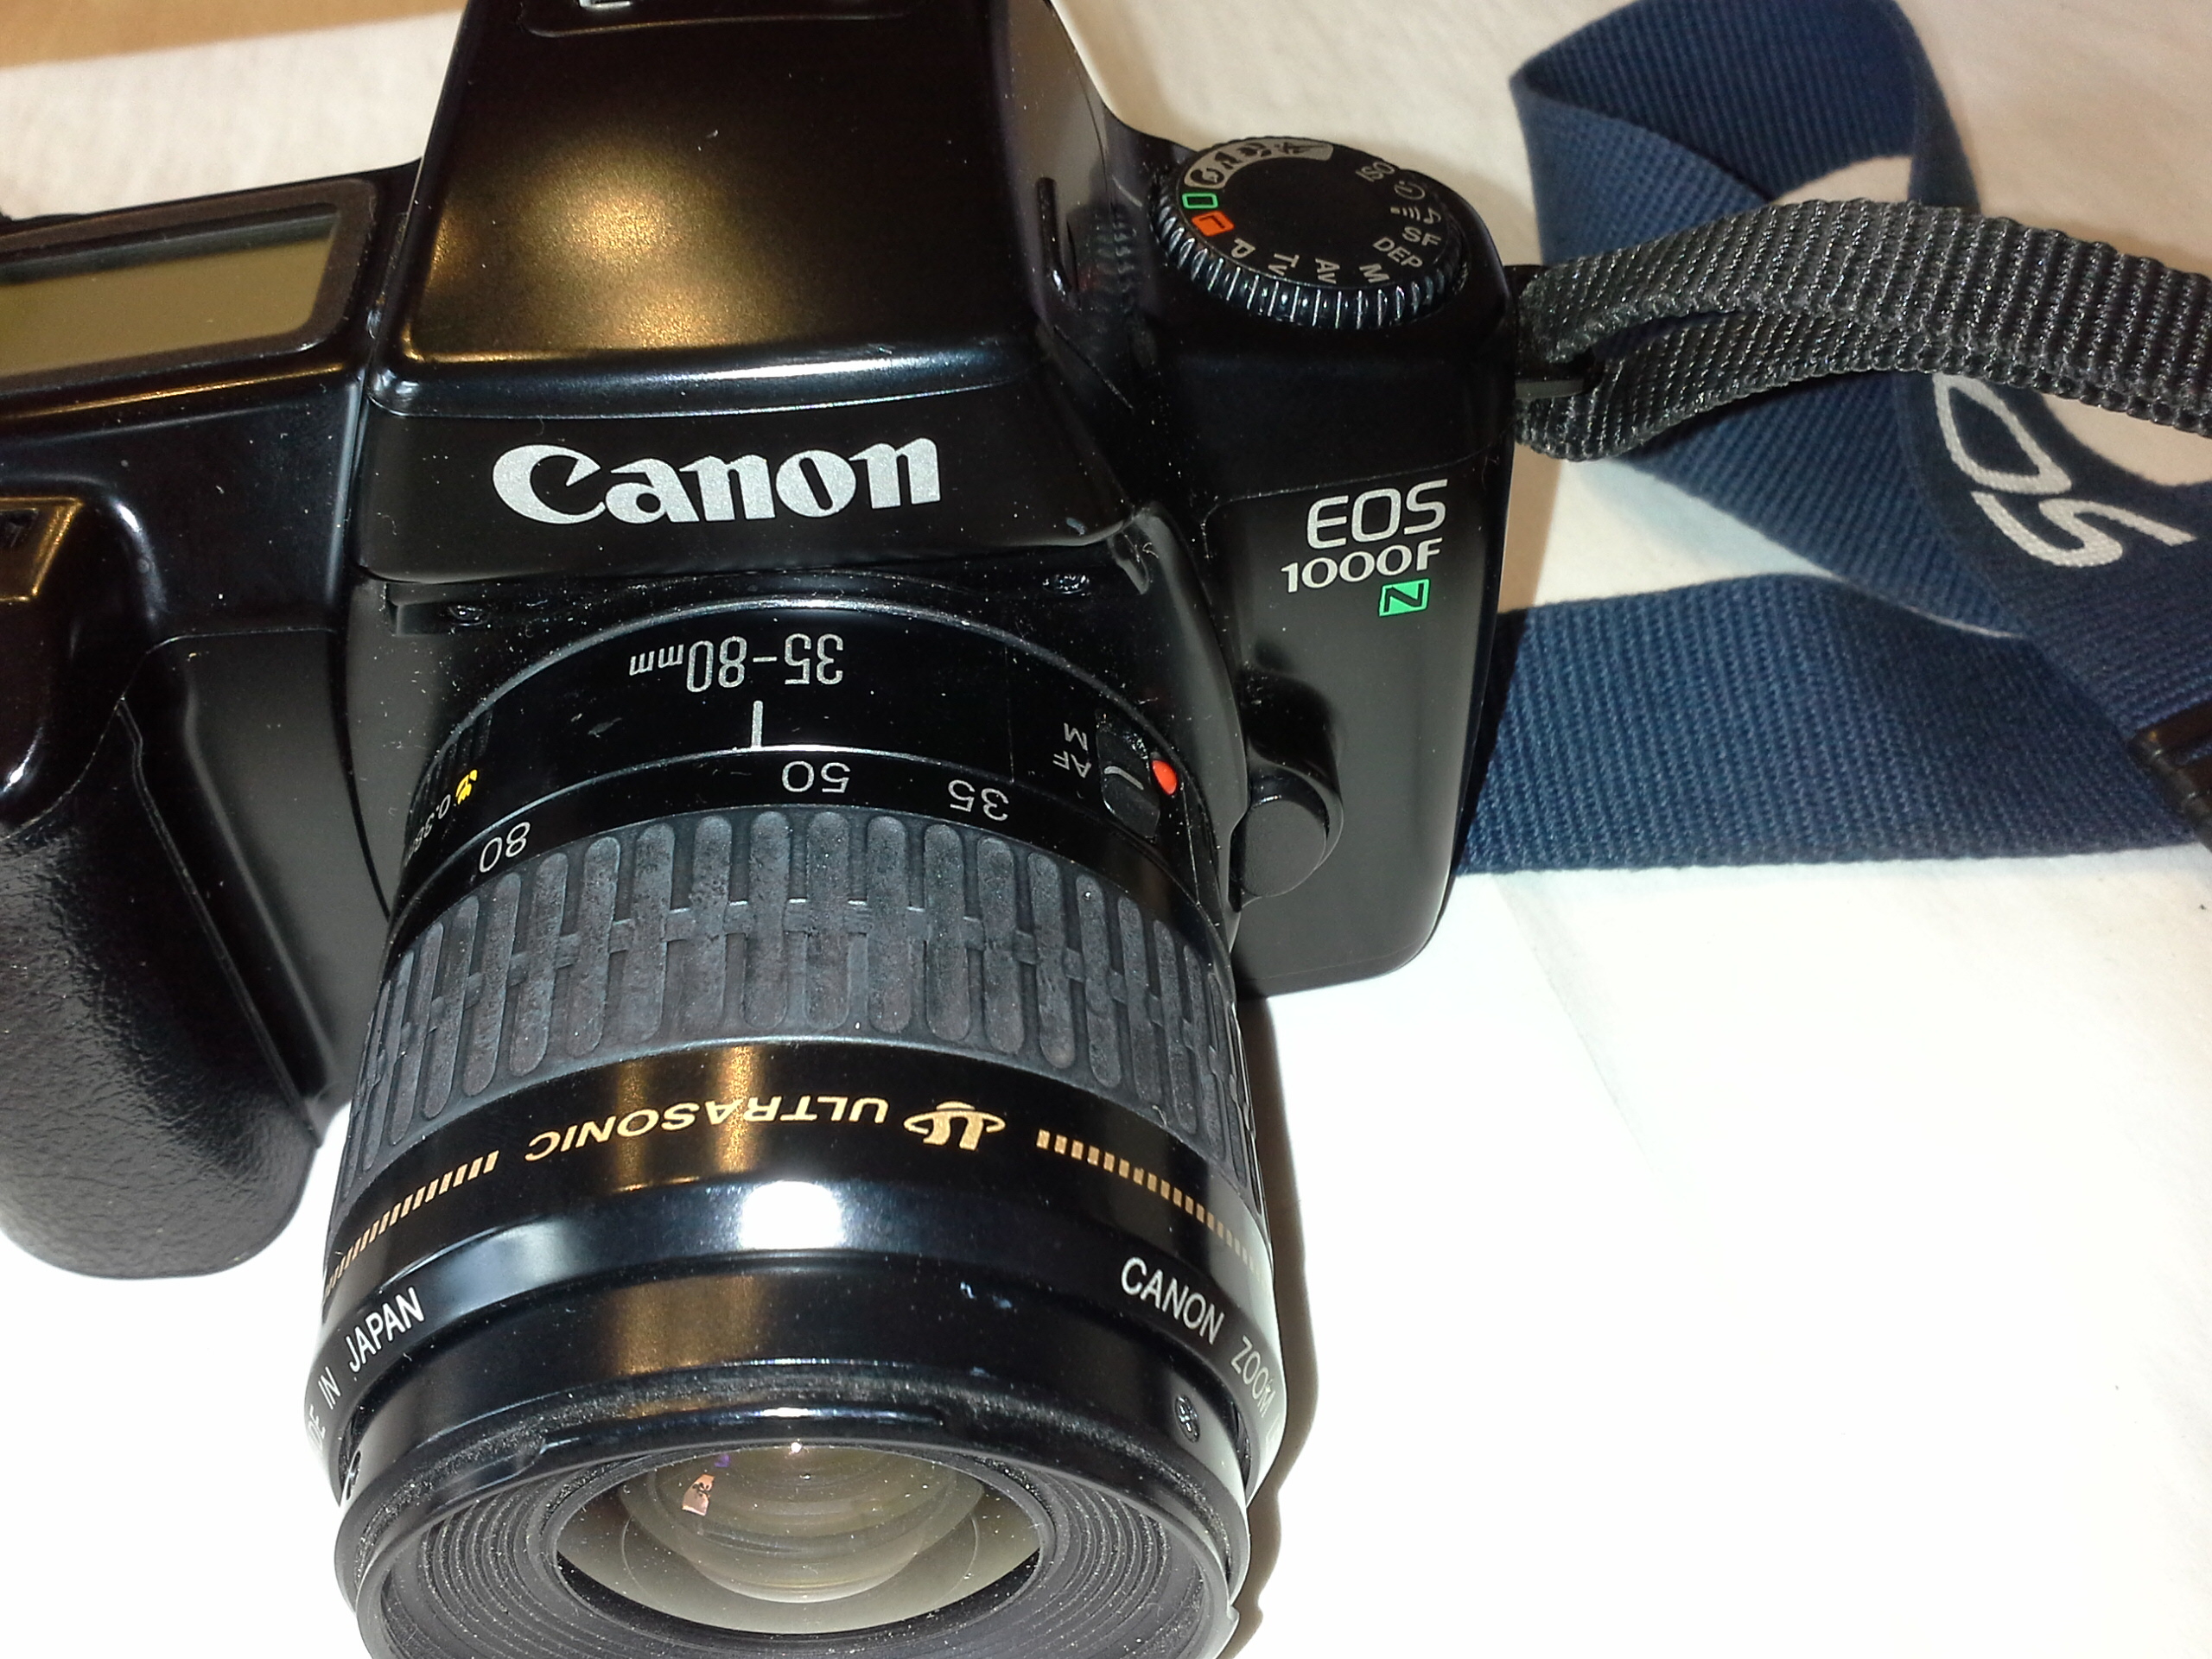 Canon Eos 1000 F Analoge Spiegelreflexkamera mit Speedlite 430EZ